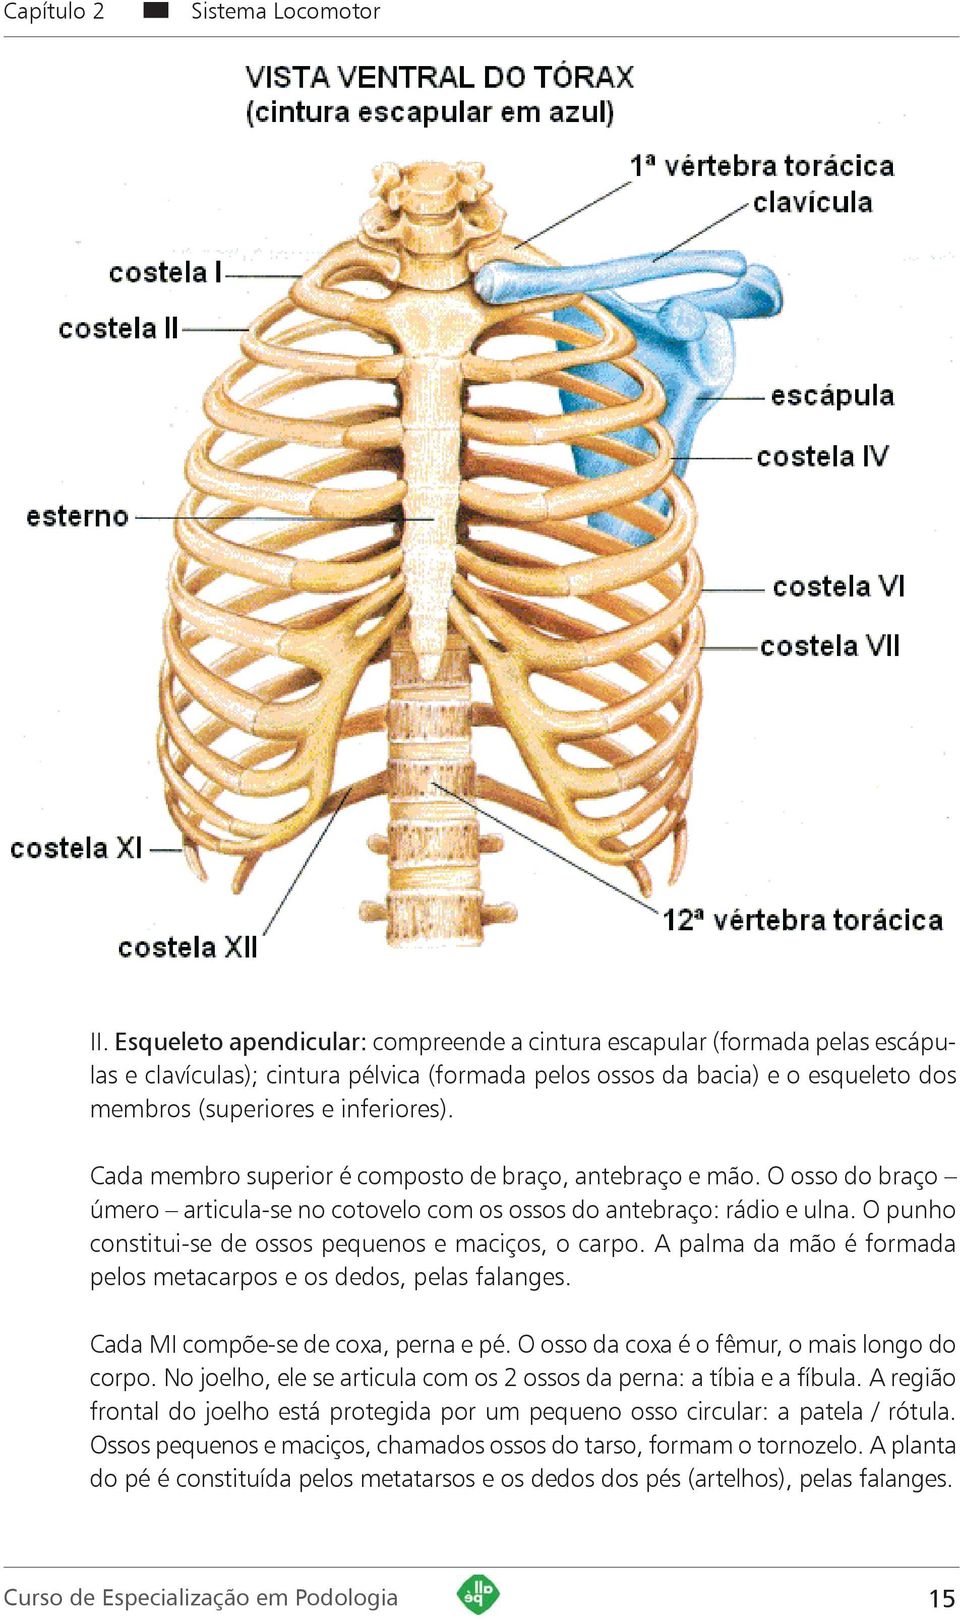 Cada membro superior é composto de braço, antebraço e mão. O osso do braço úmero articula-se no cotovelo com os ossos do antebraço: rádio e ulna.